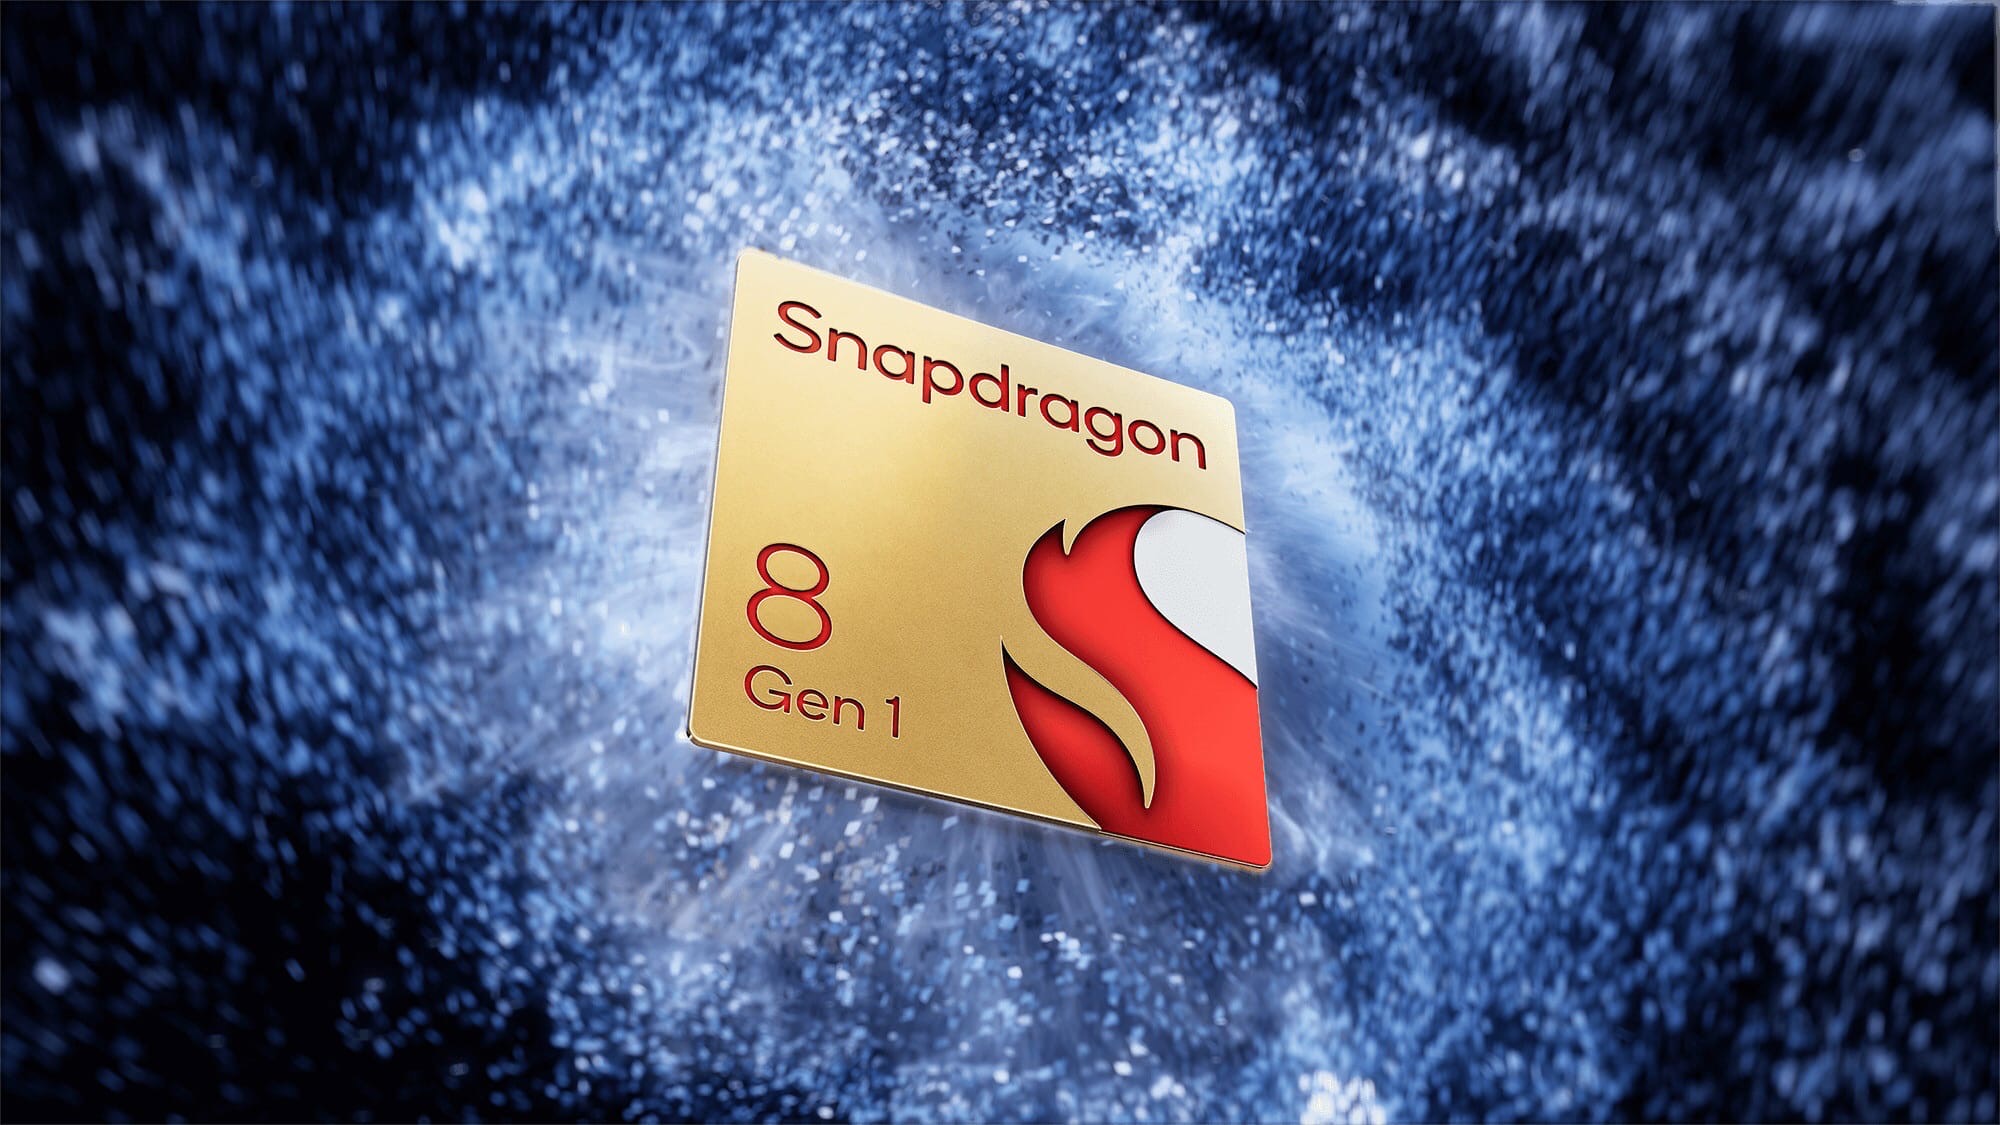 Представлен новый мобильный процессор от Qualcomm - Snapdragon 8 Gen 1. 